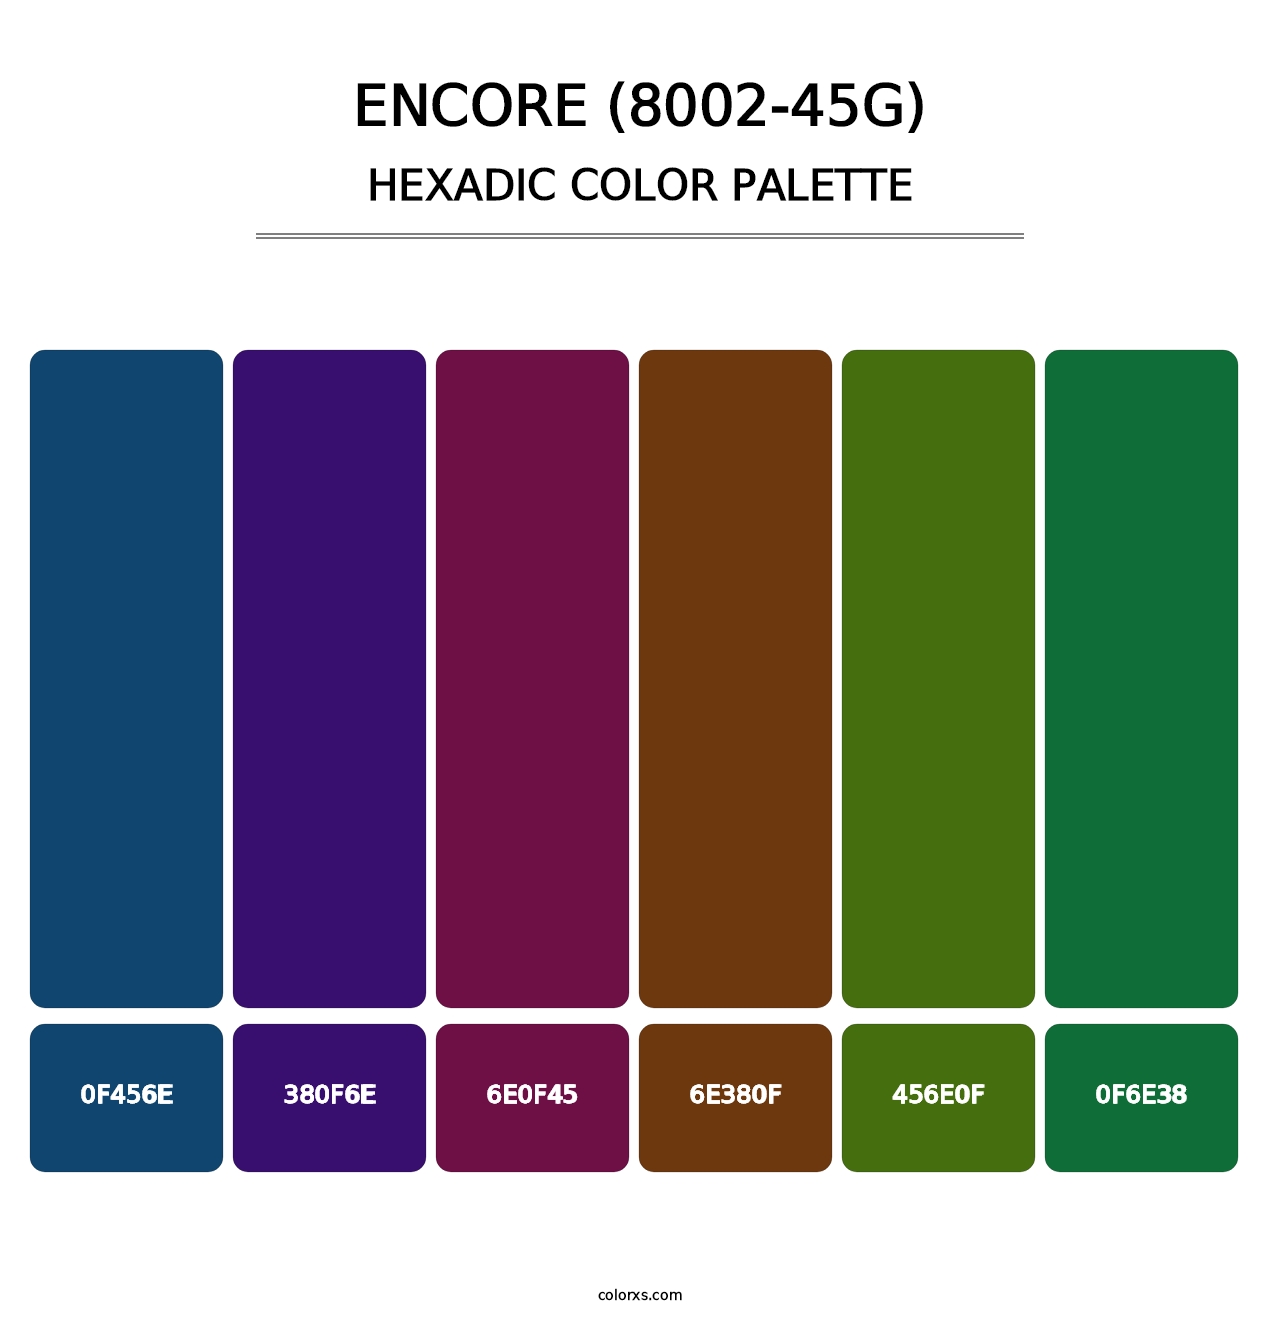 Encore (8002-45G) - Hexadic Color Palette